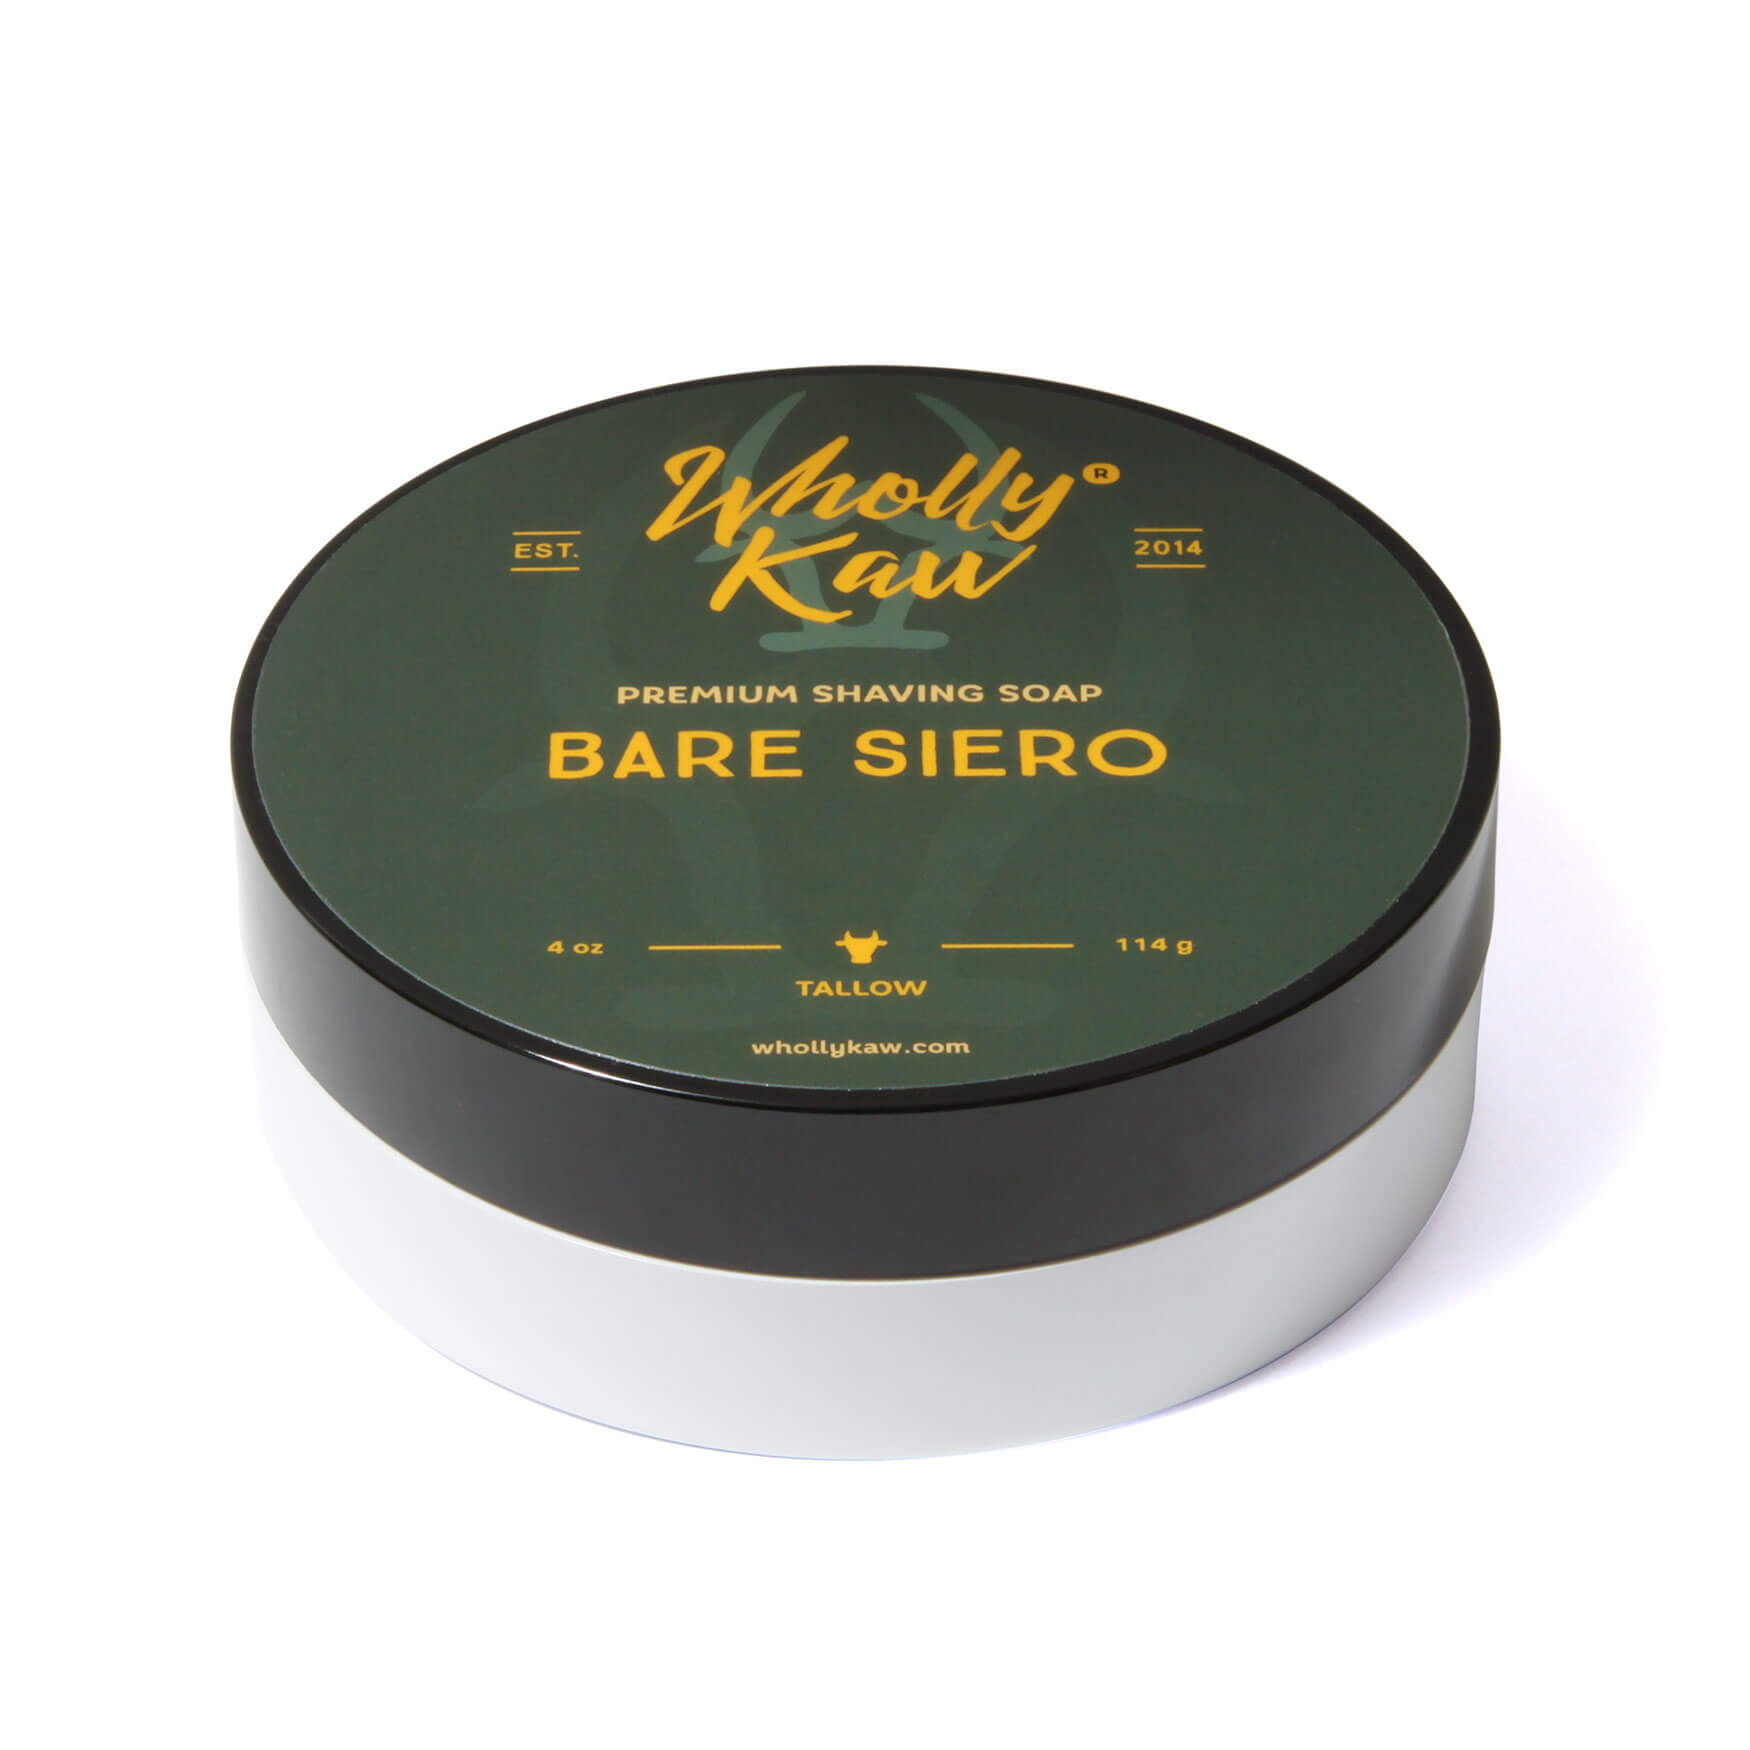 Wholly Kaw Bare Siero Shaving Soap